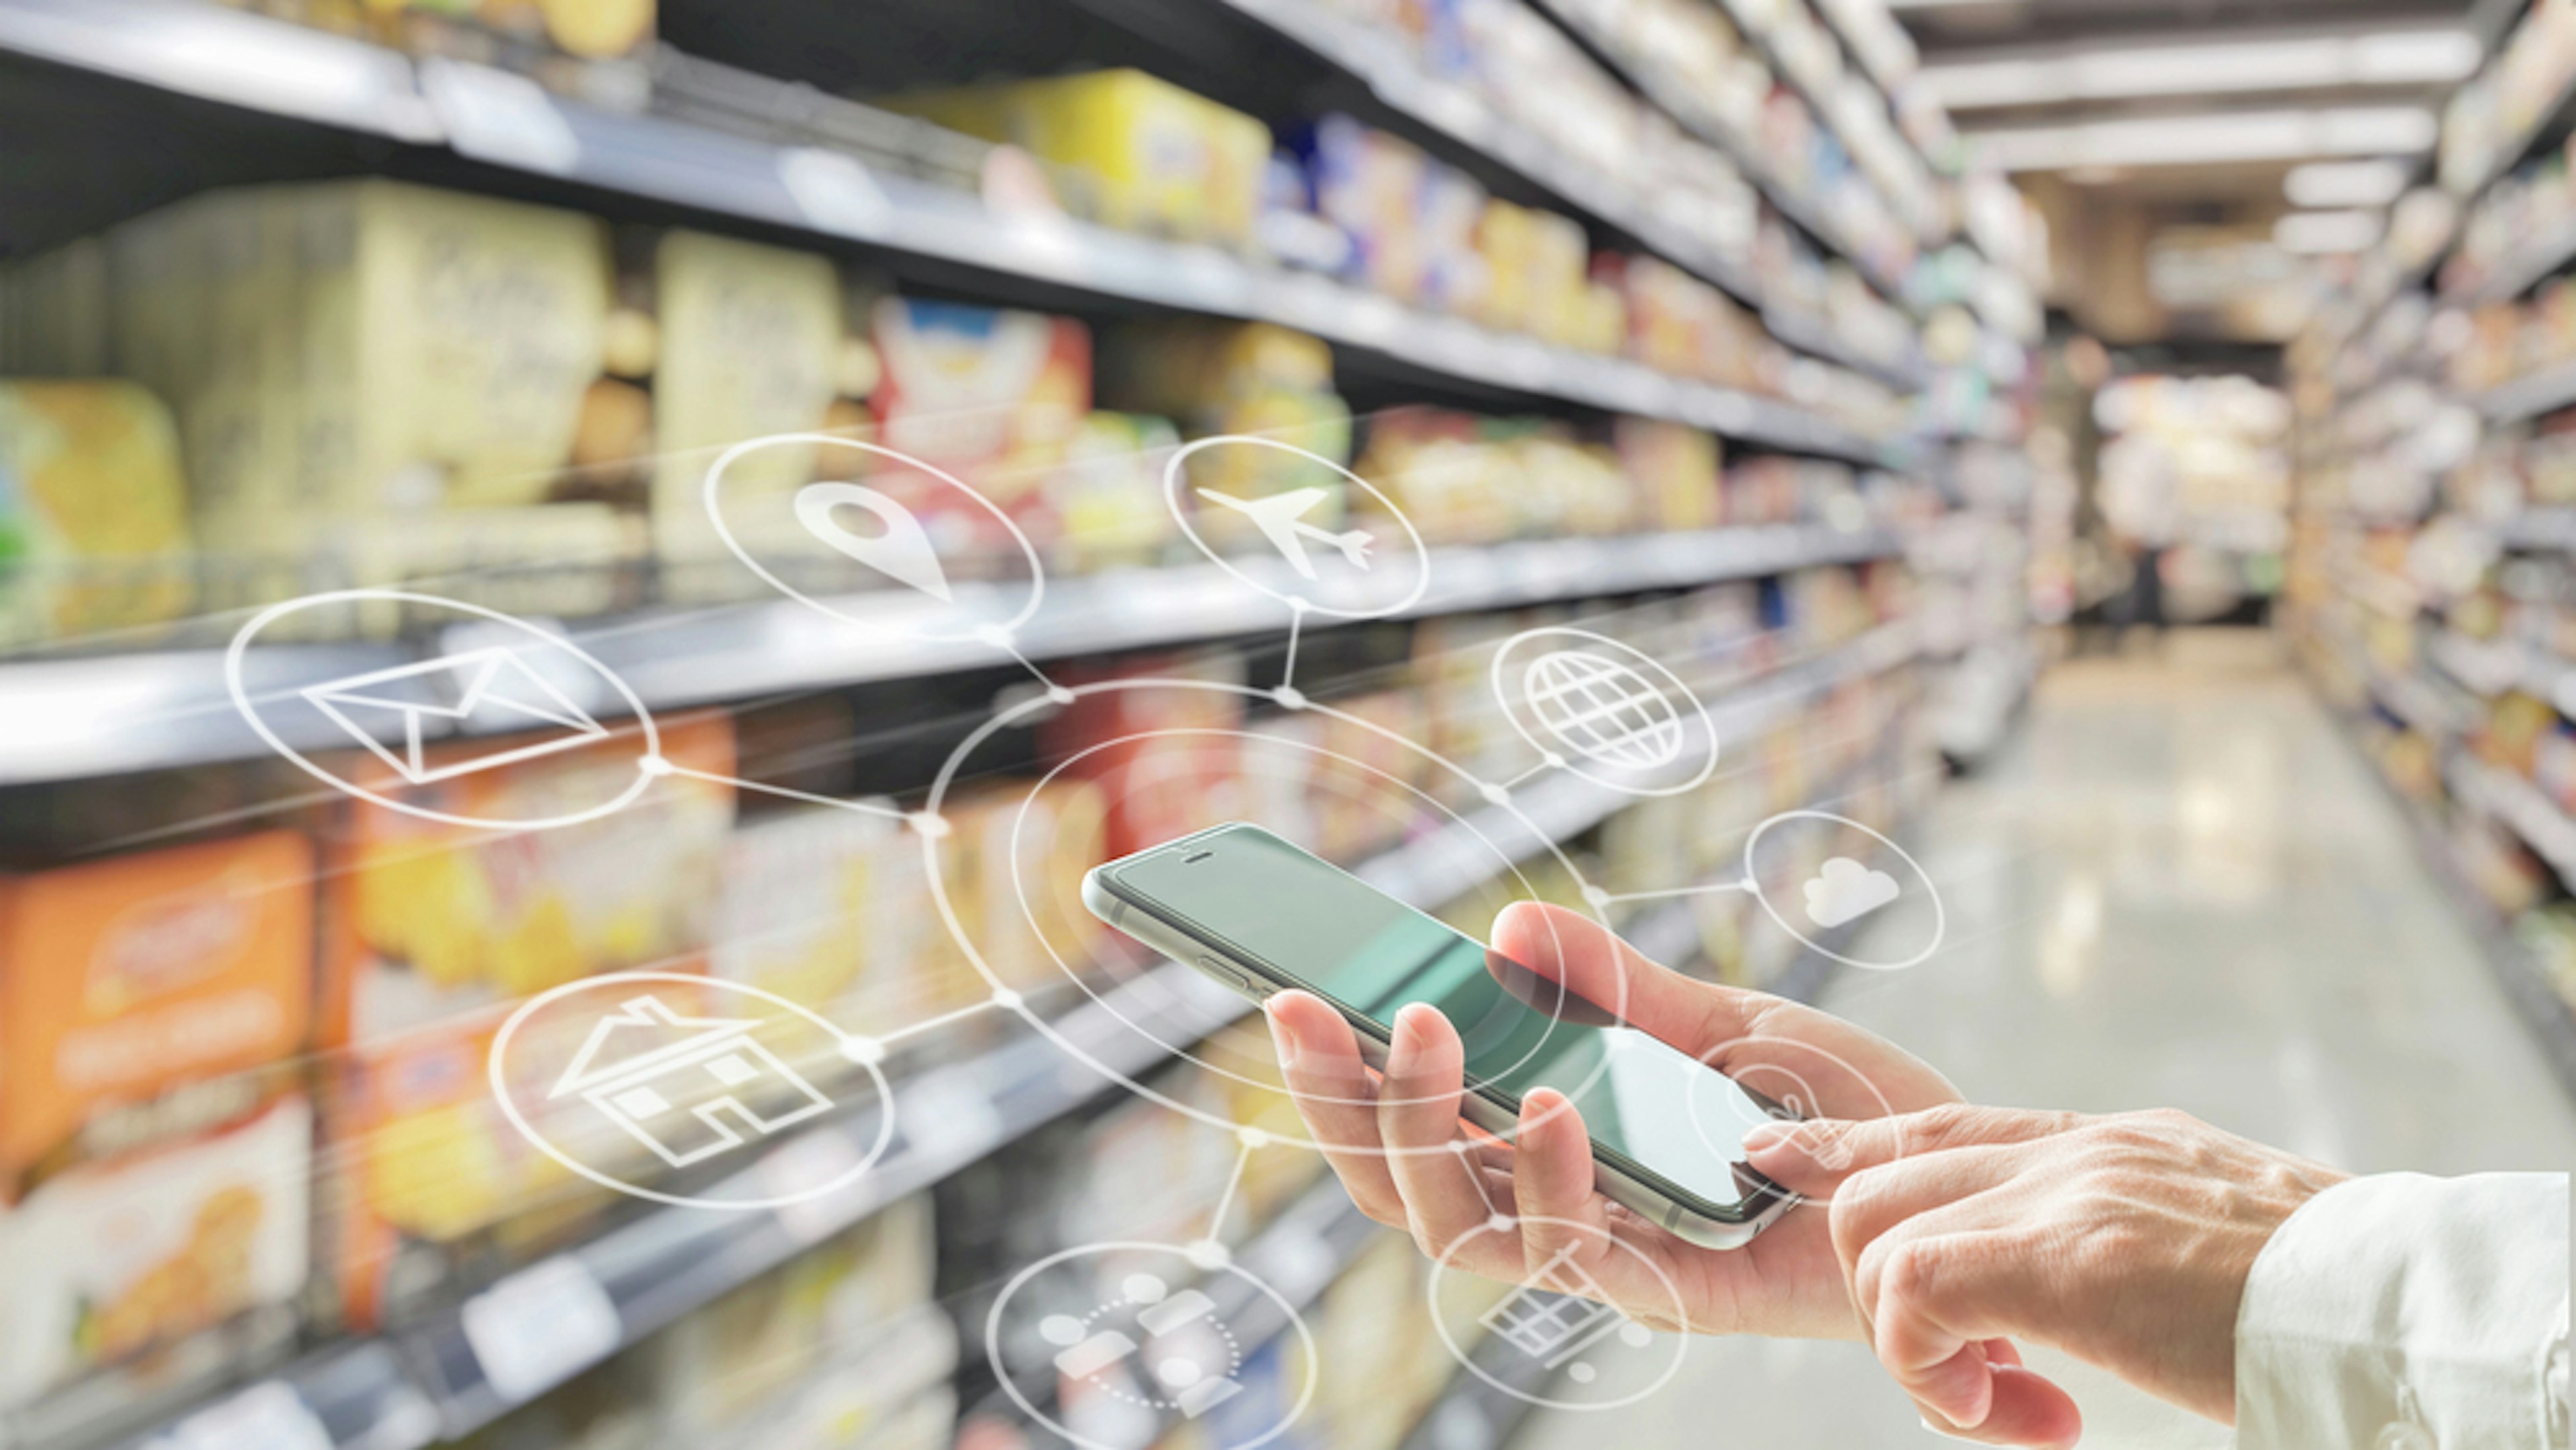 Smartphone mit visualisierten Funktionen zwischen Supermarktregalen.